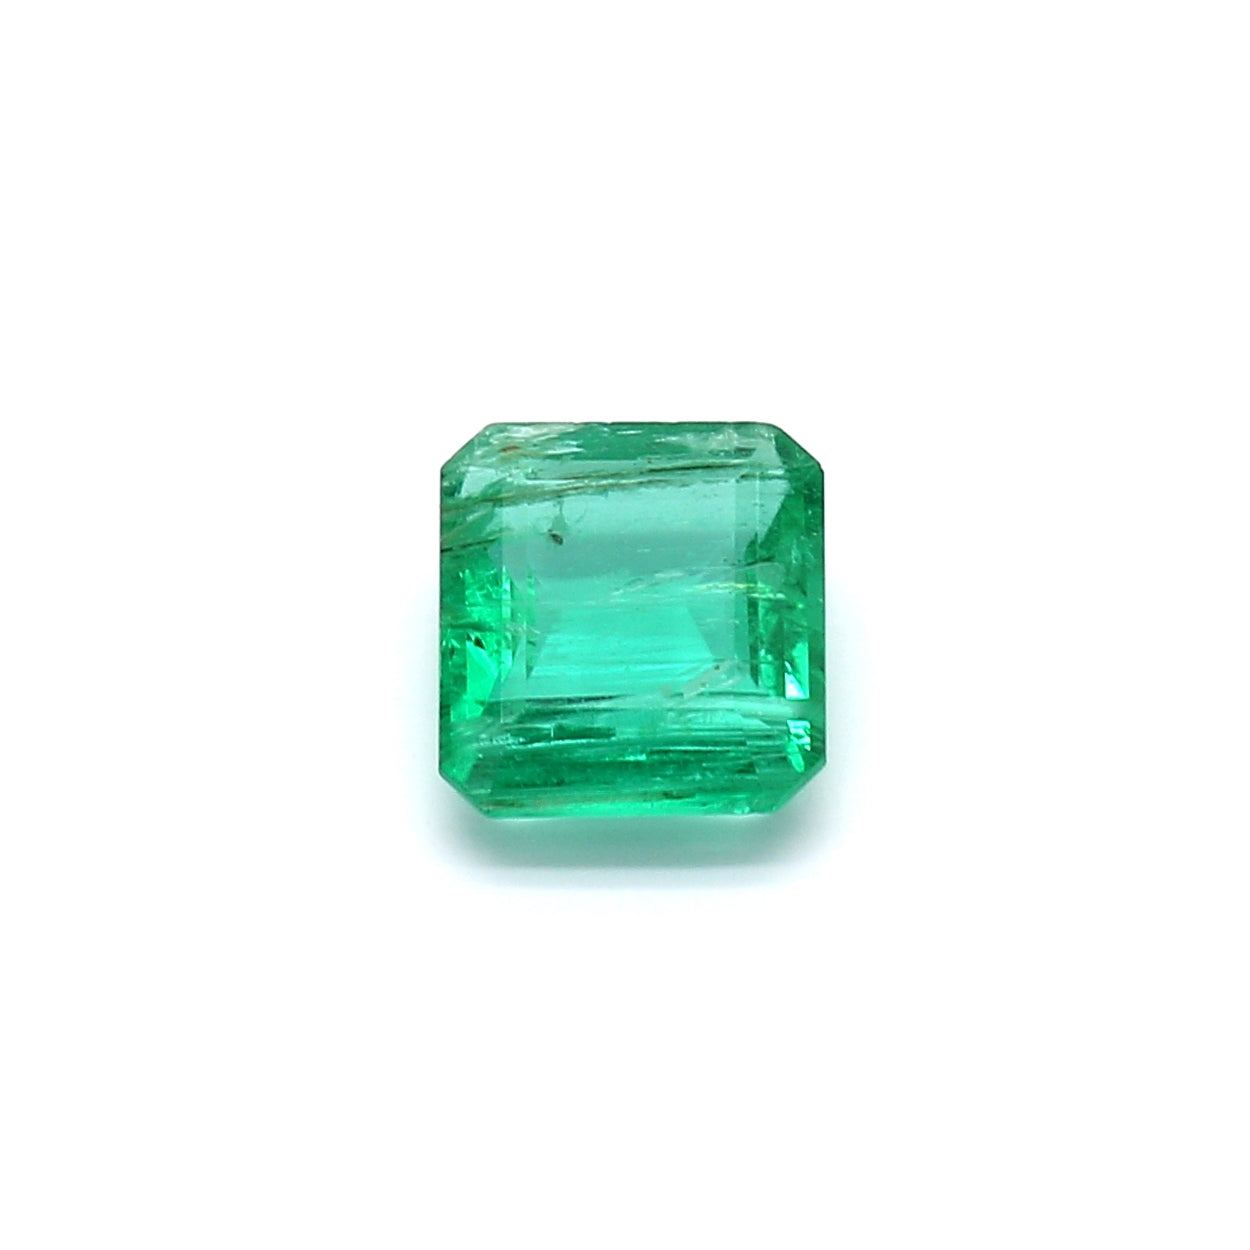 1.33ct Octagon Emerald, Minor Oil, Zambia - 7.43 x 6.71 x 3.25mm